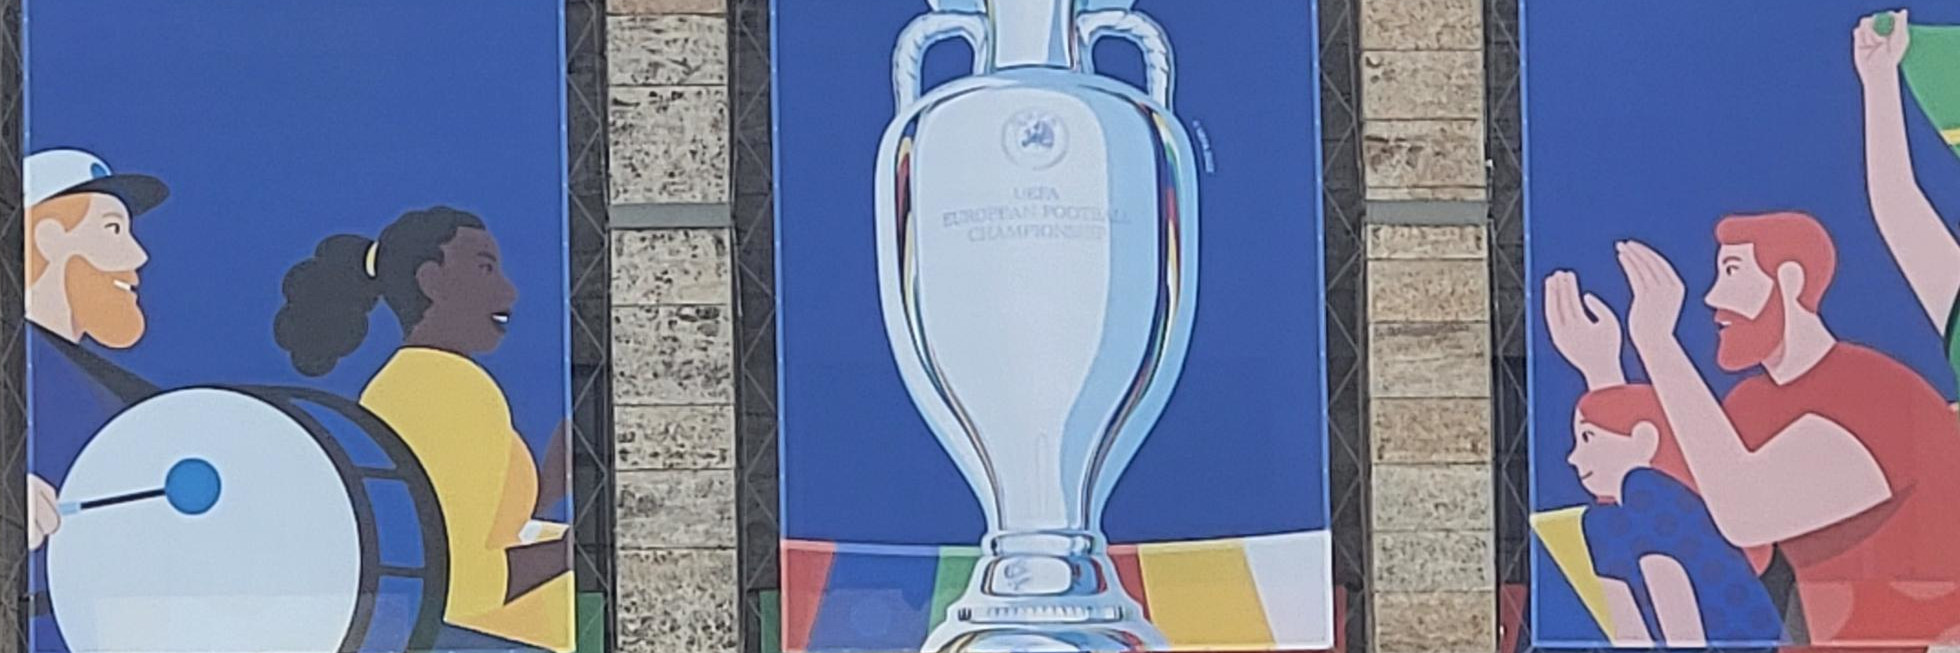 Buntes Branding der UEFA EURO 2024 mit dem Pokal der Europameisterschaft in der Mitte. Links davon sind zwei Fans mit einer Trommel, rechts sind Fans am Klatschen und mit Fahne.